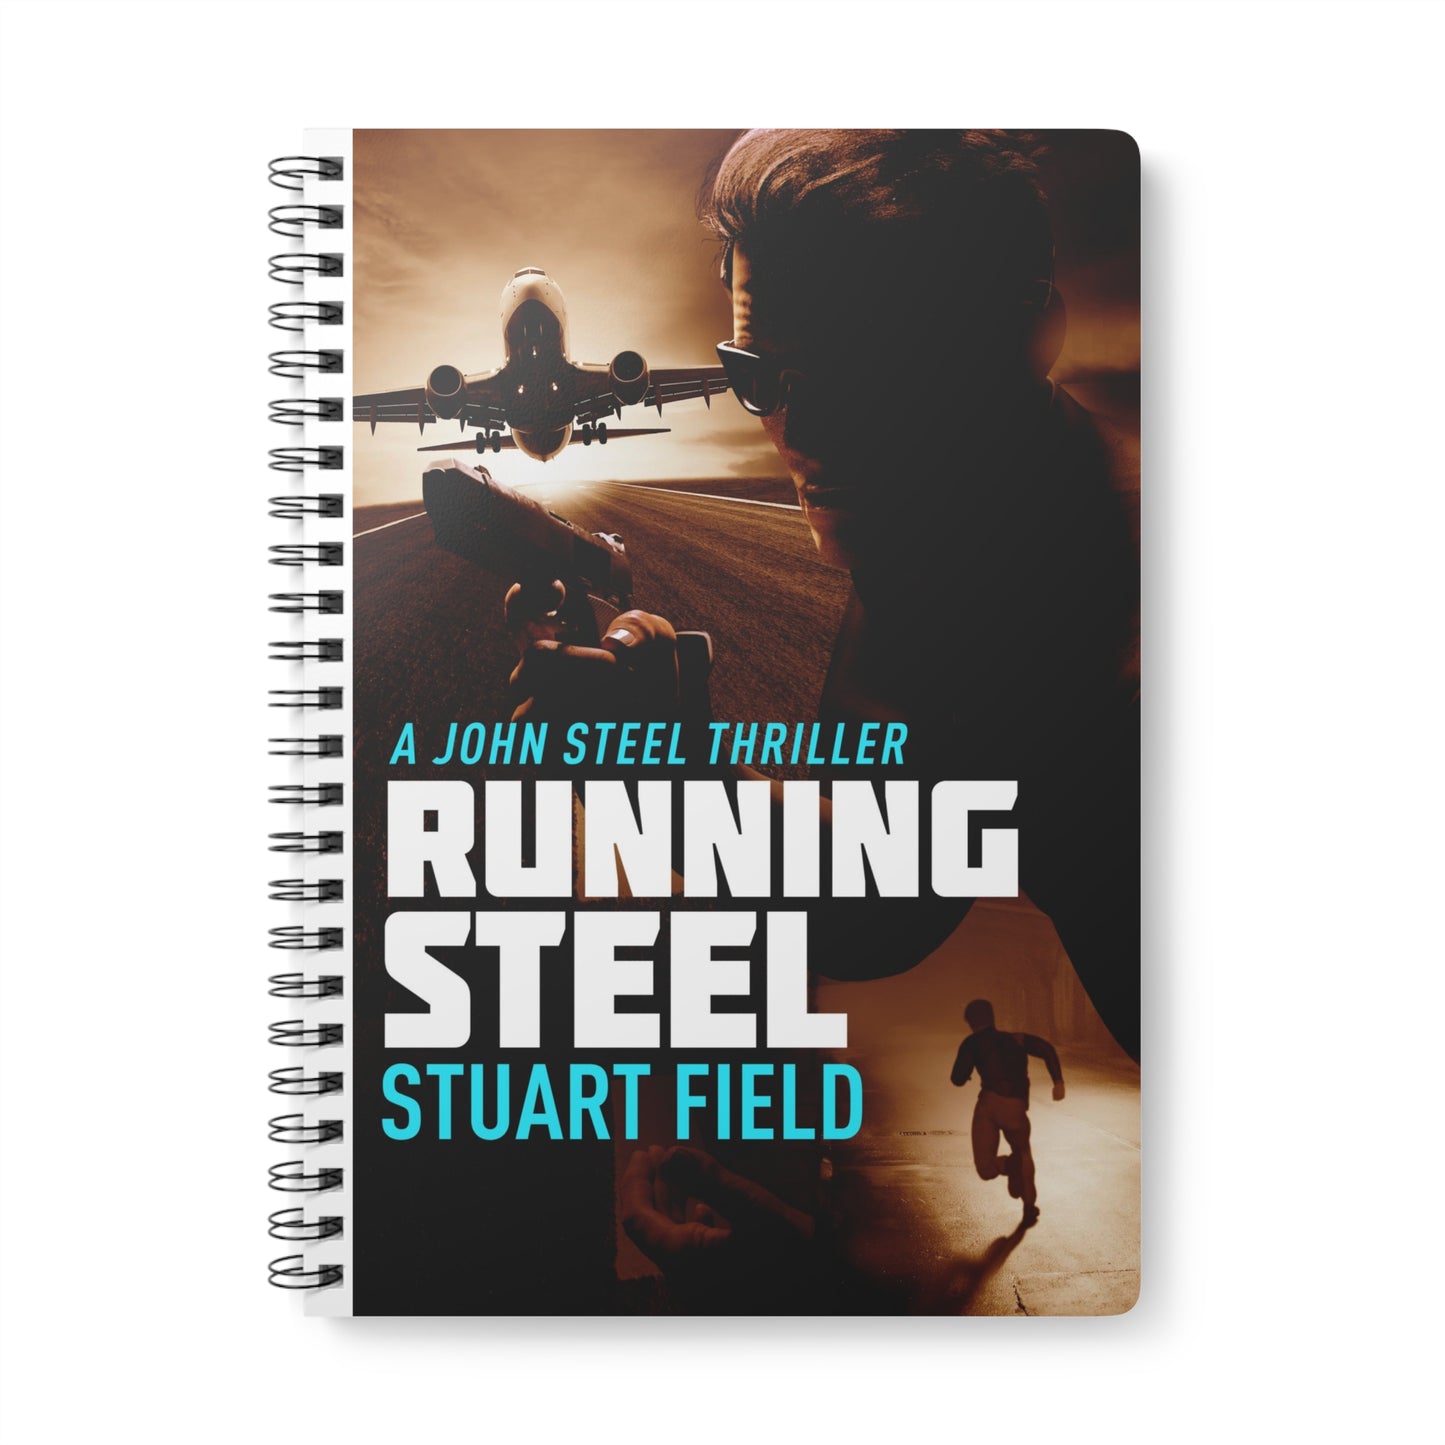 Running Steel - A5 Wirebound Notebook